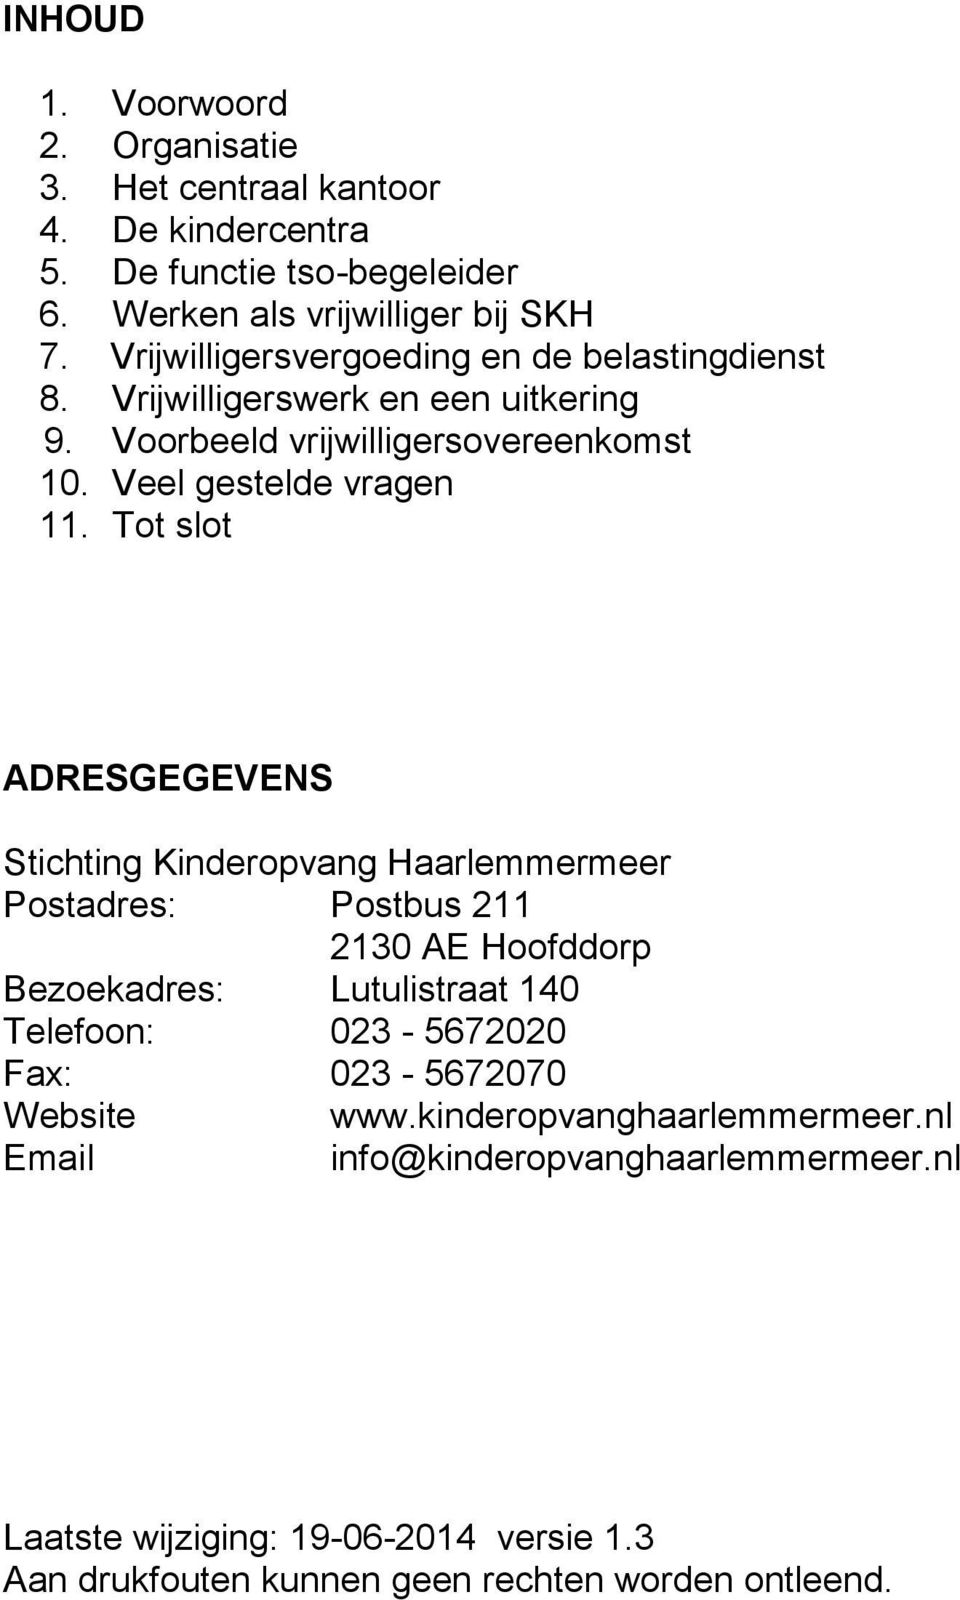 Tot slot ADRESGEGEVENS Stichting Kinderopvang Haarlemmermeer Postadres: Postbus 211 2130 AE Hoofddorp Bezoekadres: Lutulistraat 140 Telefoon: 023-5672020 Fax: